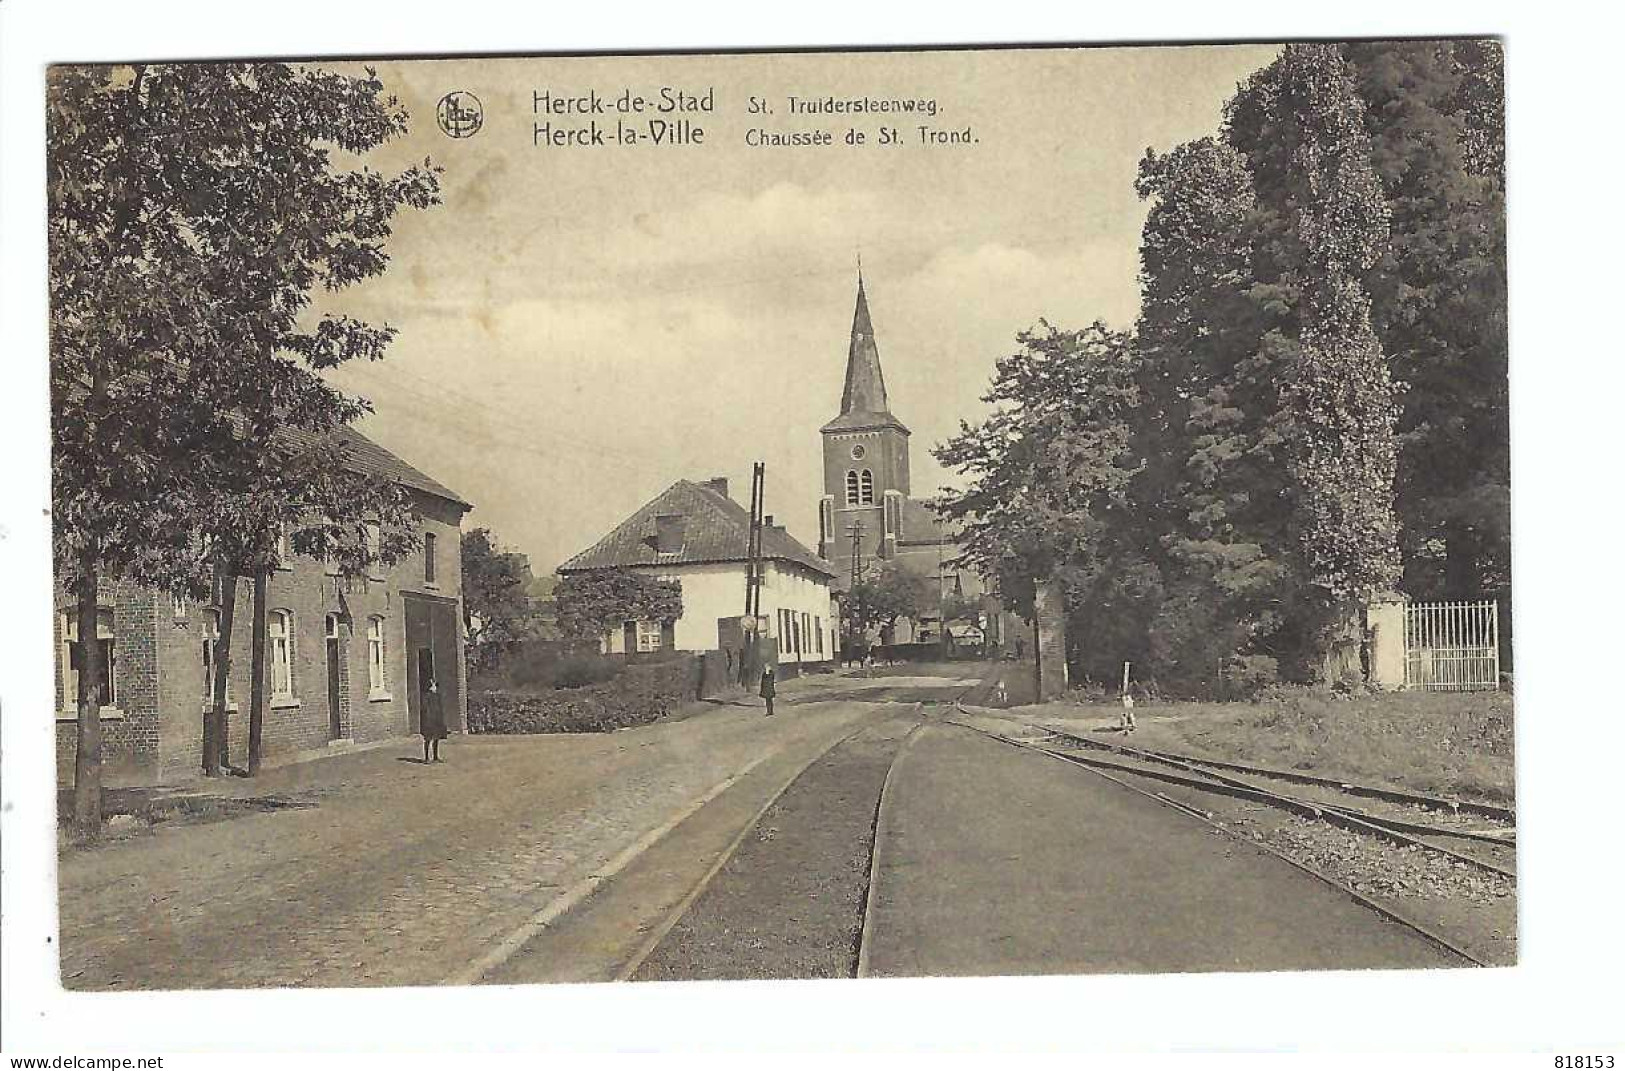 Herk-de-Stad   Herck-de-Stad  St.Truidersteenweg   1932 - Herk-de-Stad